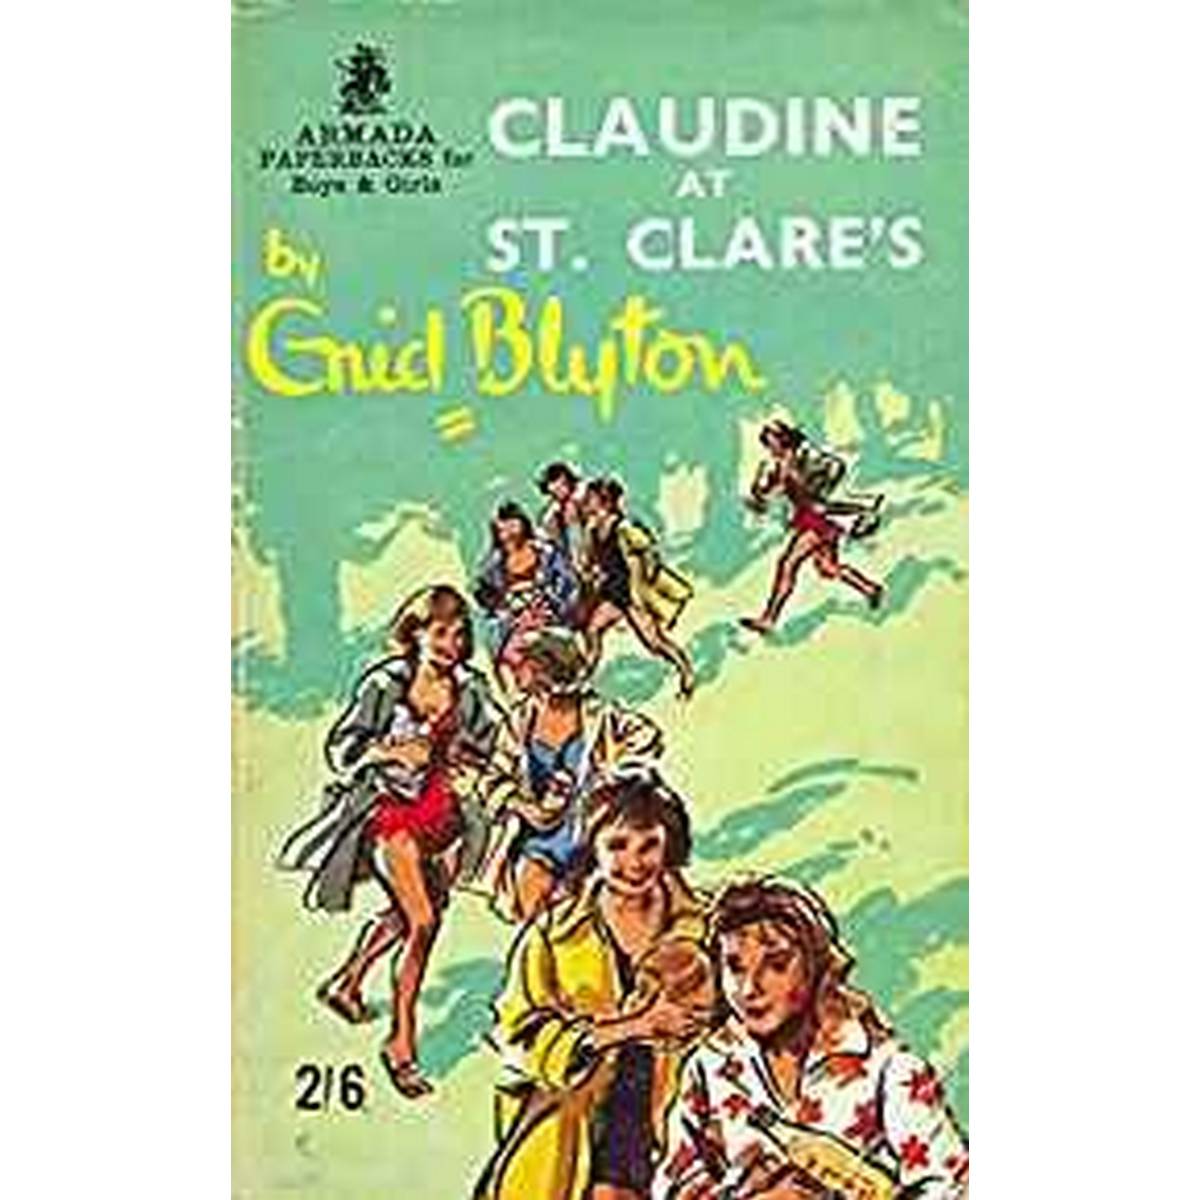 St Clare's- Claudine 7